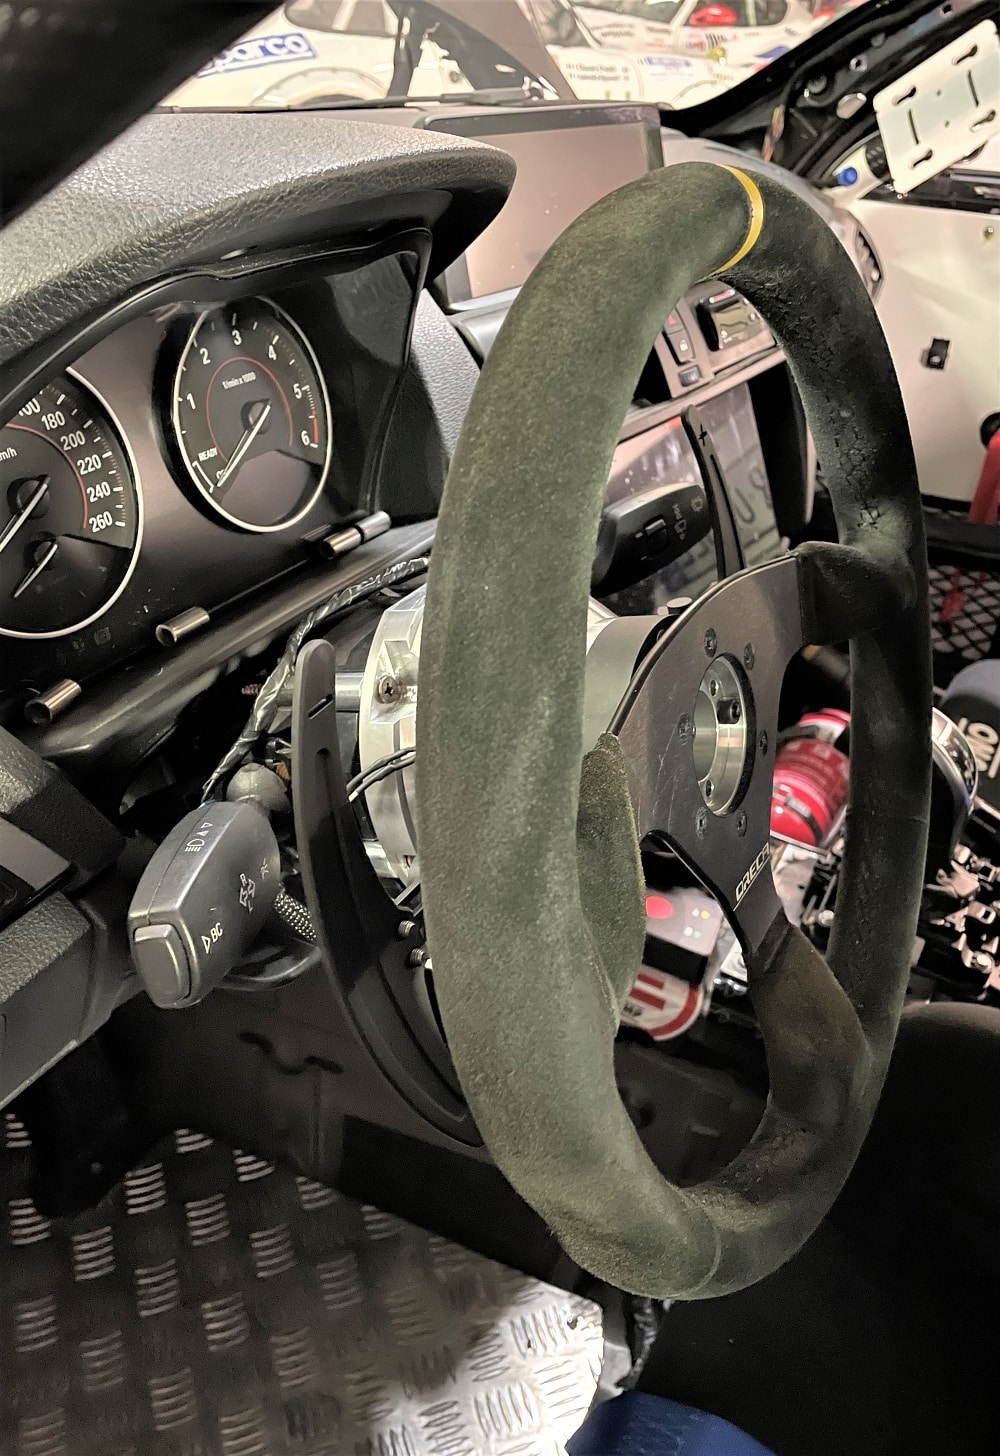 Kit cambio al volante Spacershop in alluminio per conversione auto da corsa uso pista rally